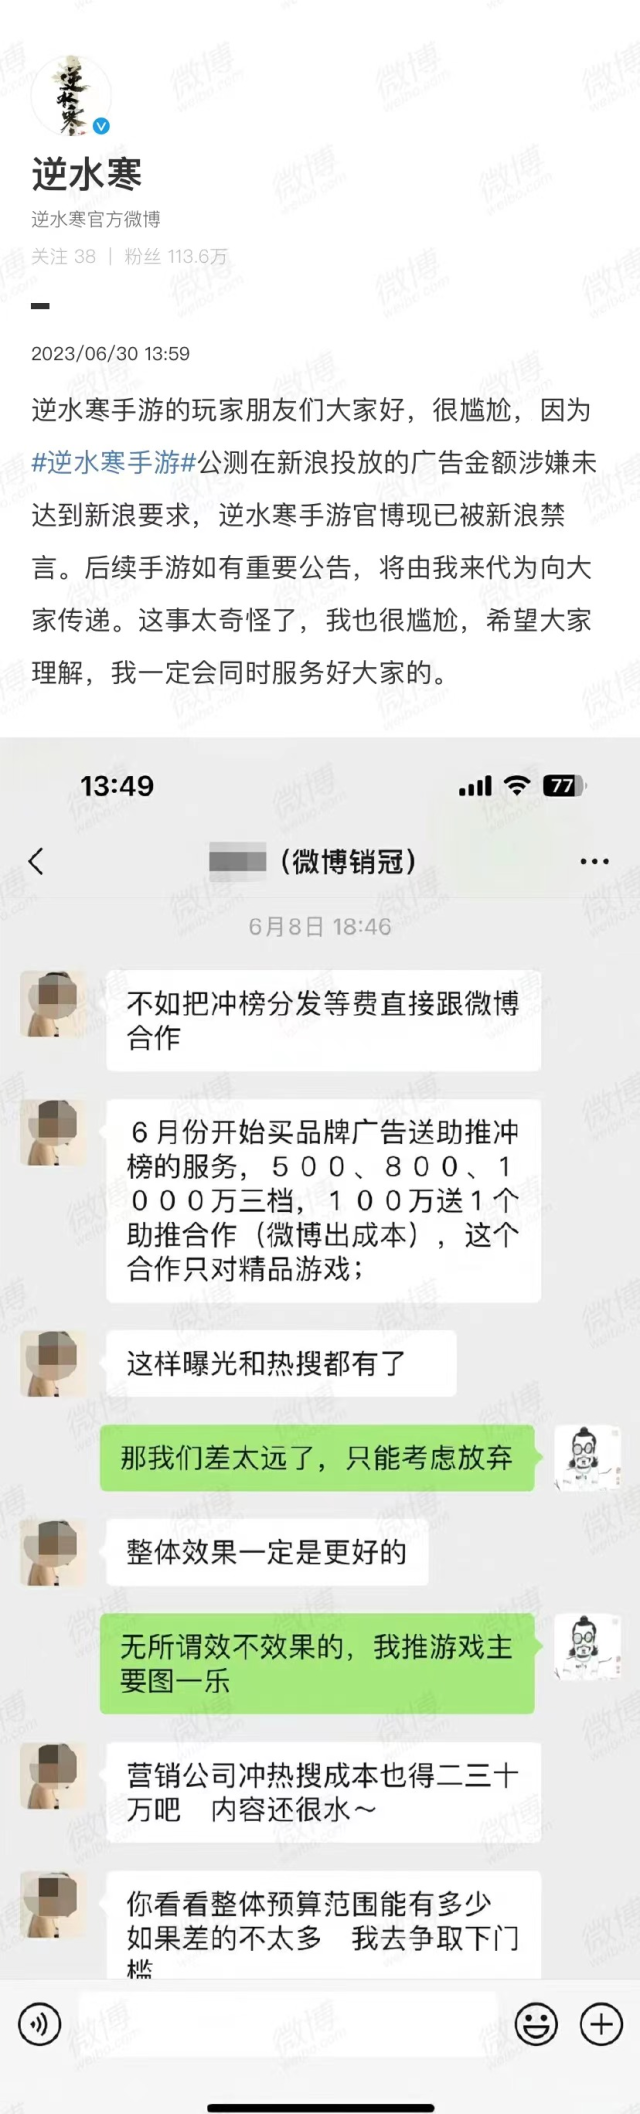 知名手游《逆水寒》称未买热搜遭微博封号 律师称或违反《反不正当竞争法》